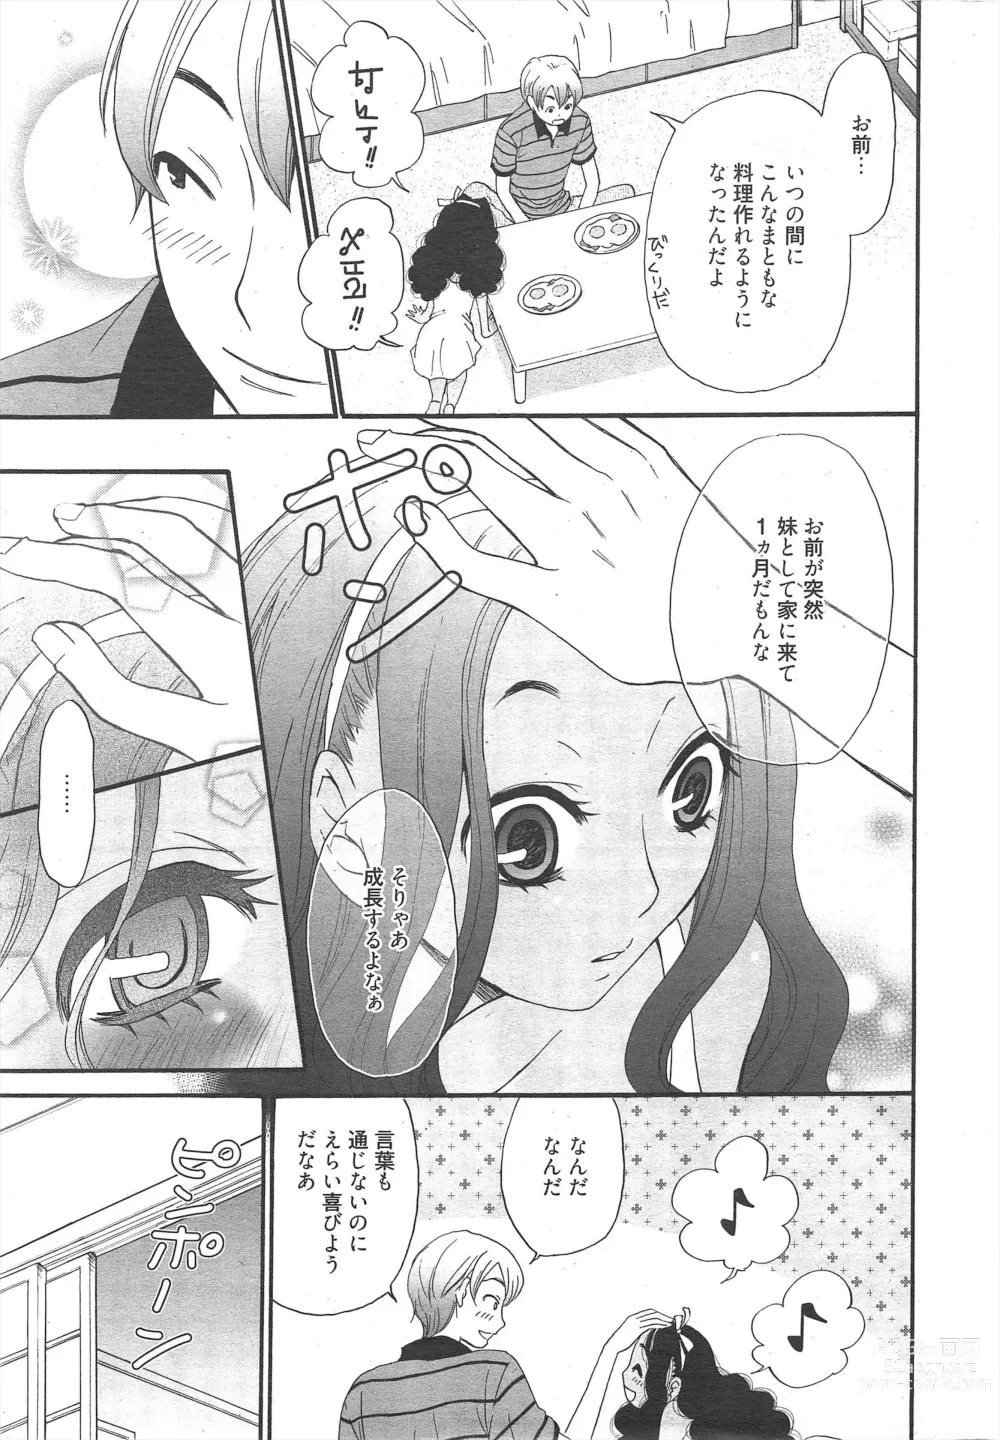 Page 11 of manga Manga Bangaichi 2012-05